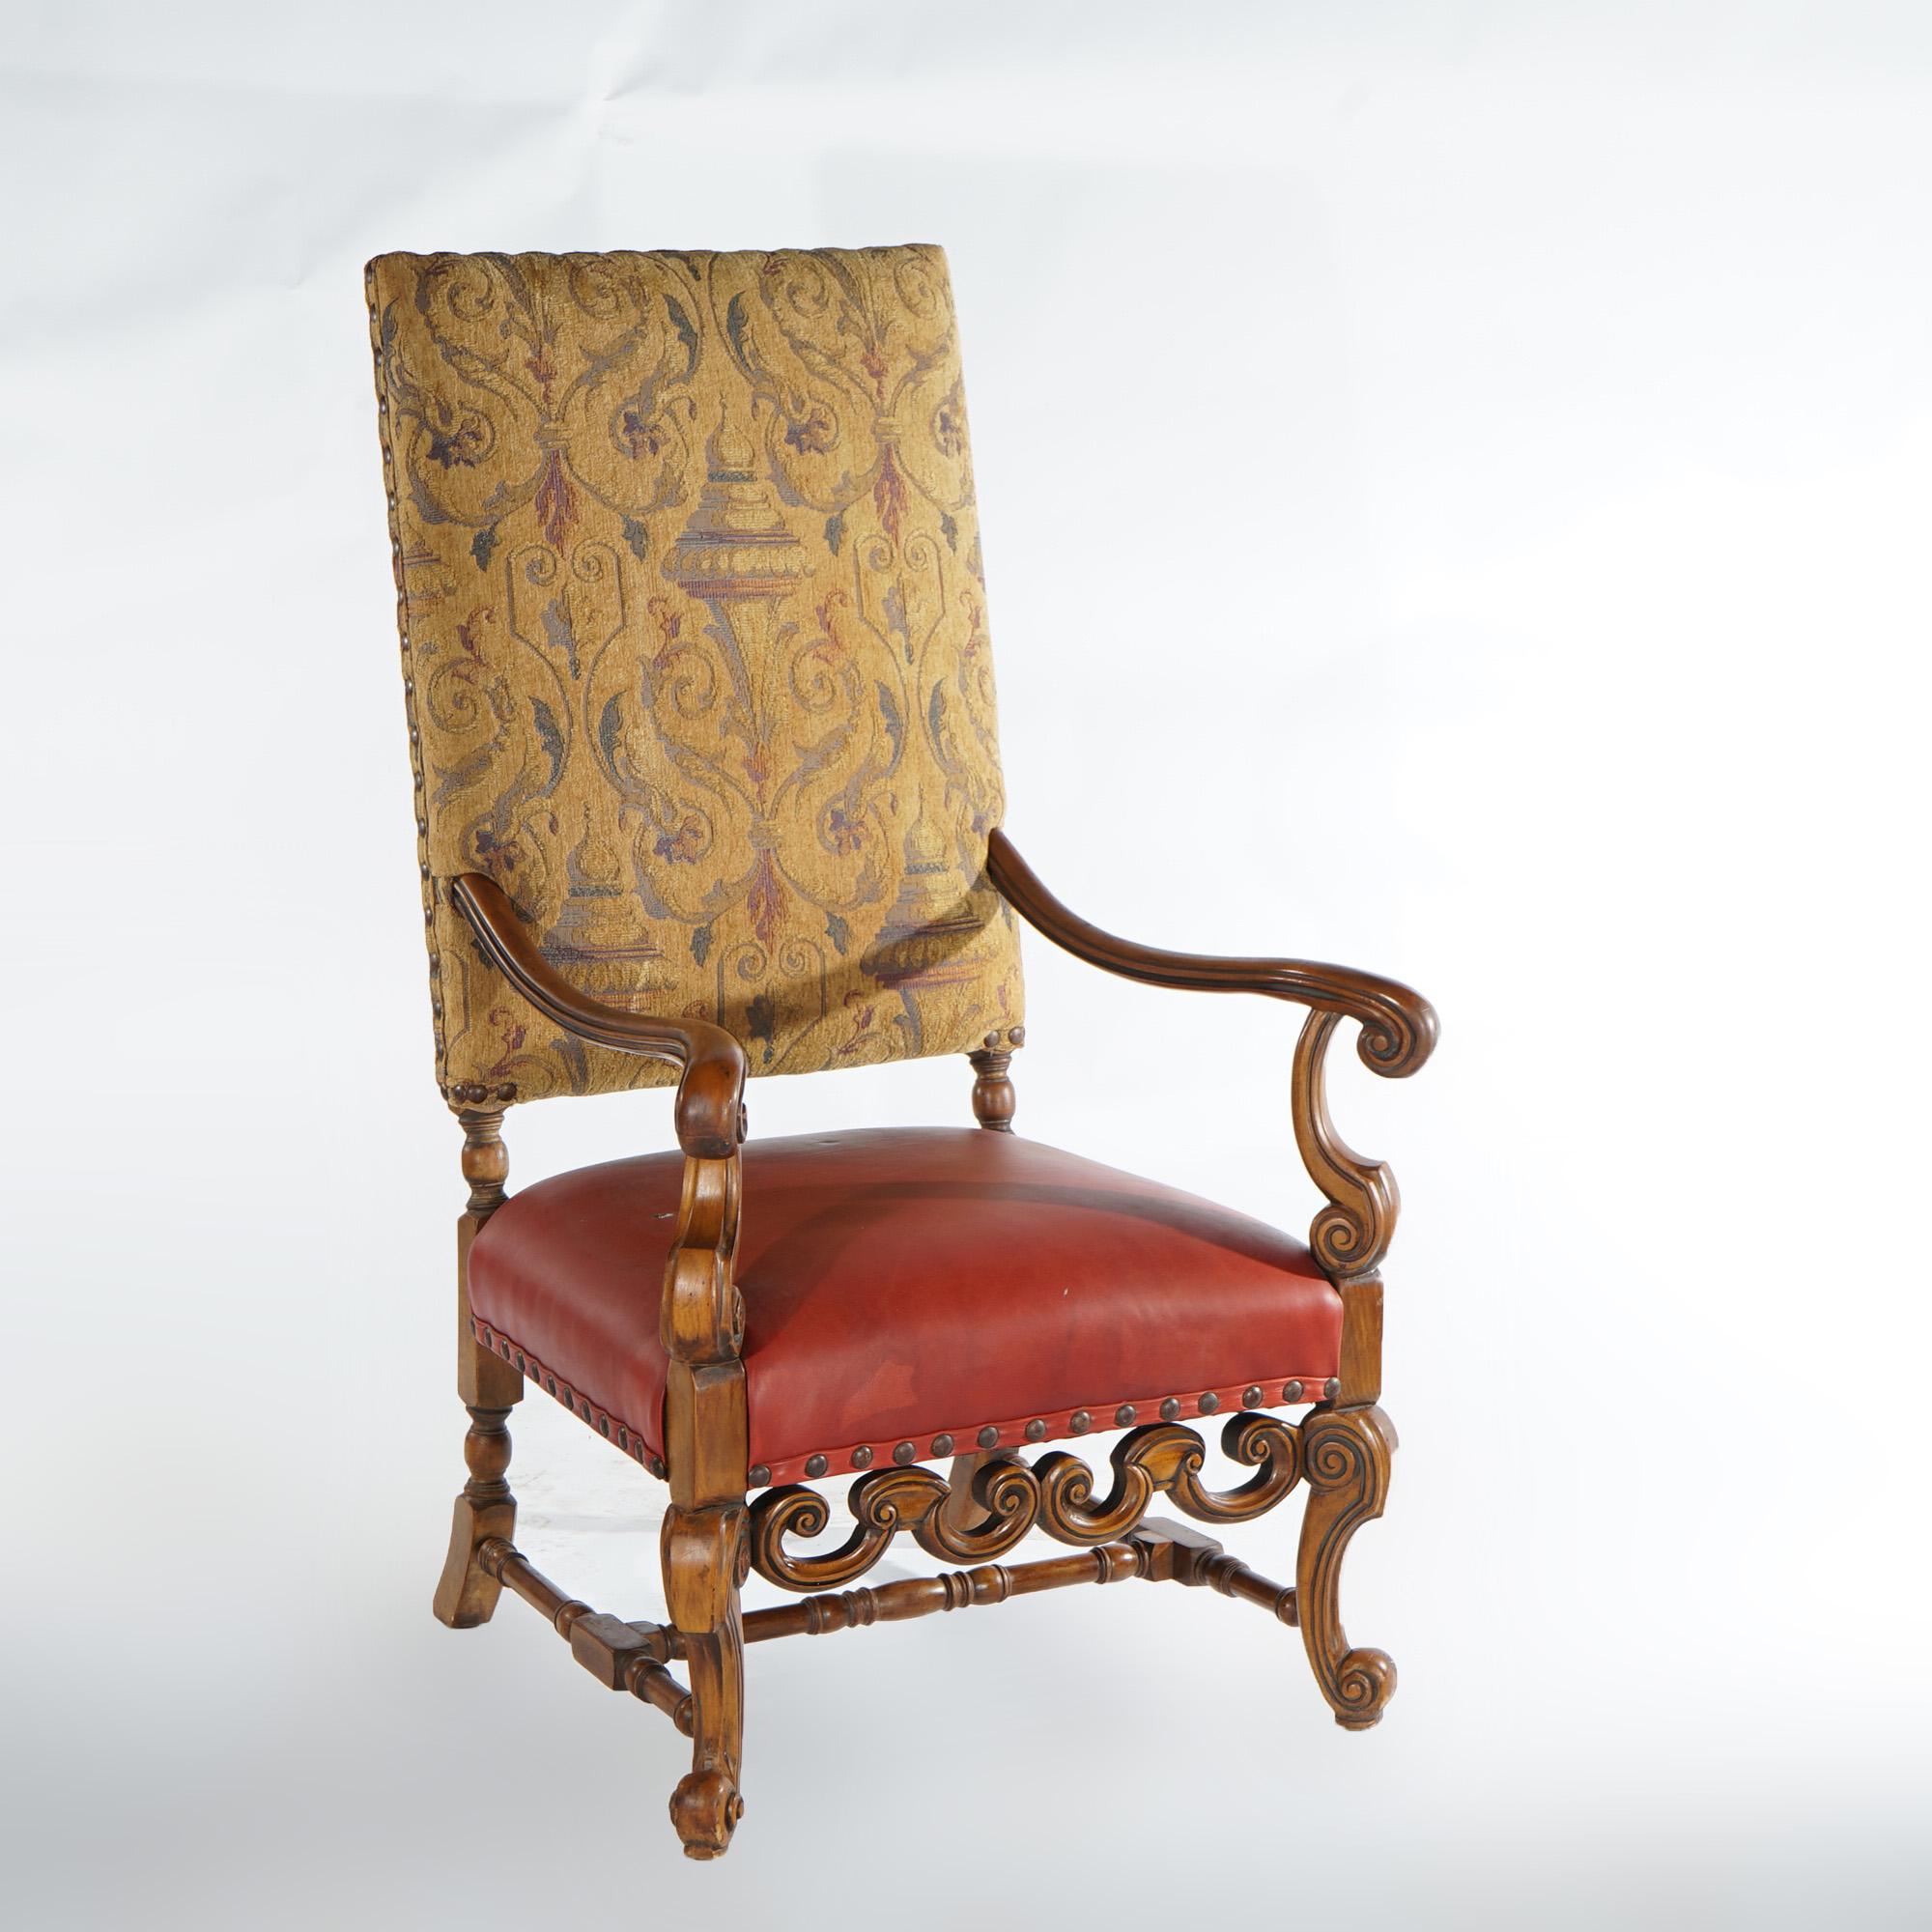 Paire de fauteuils trône baroques continentaux anciens, avec châssis en noyer, hauts dossiers rembourrés, accoudoirs, tabliers et pieds sculptés en forme de volutes, vers 1920.

Dimensions - 52 